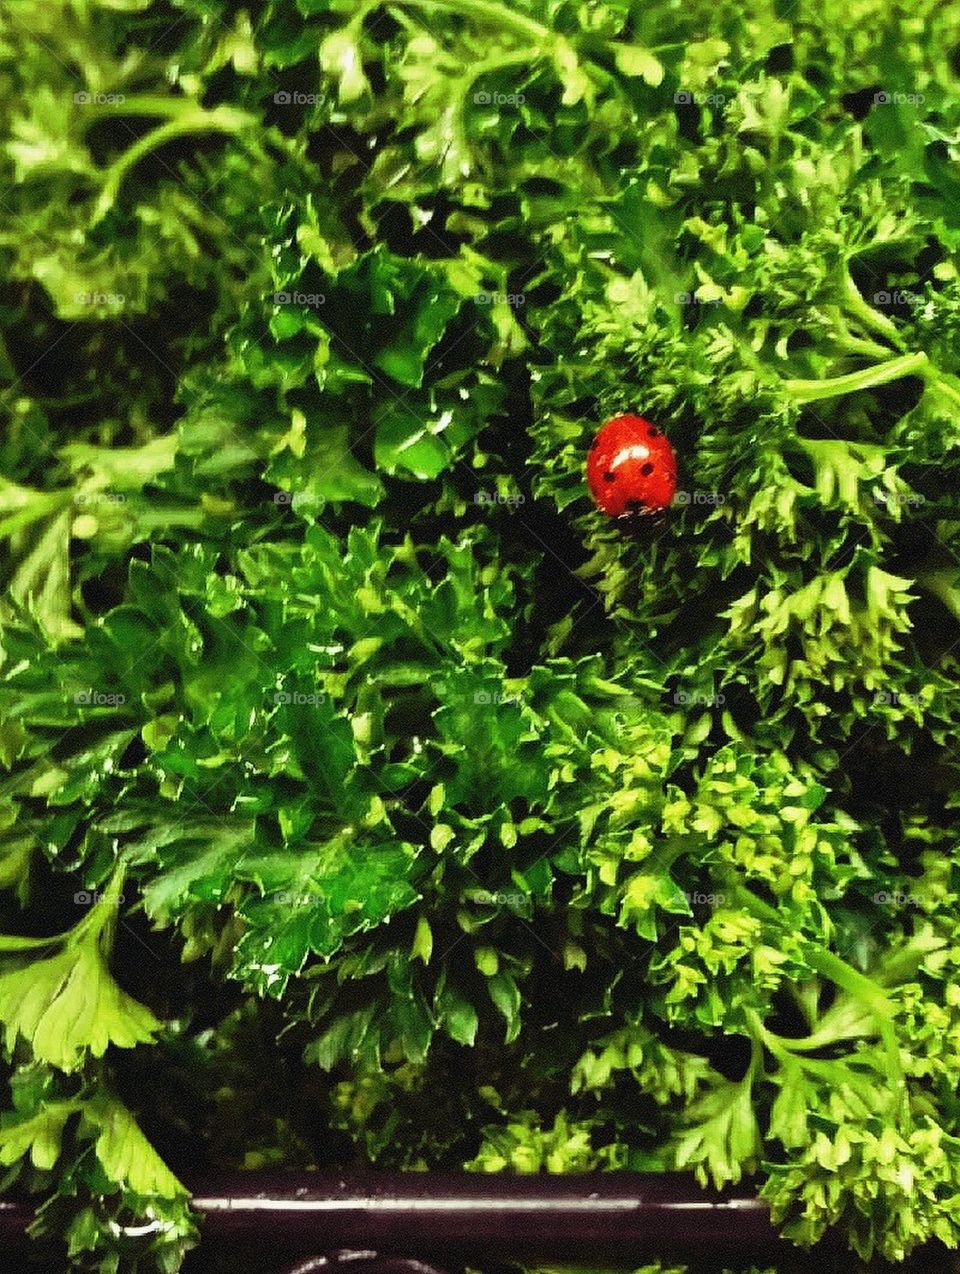 Lady bug in parsley